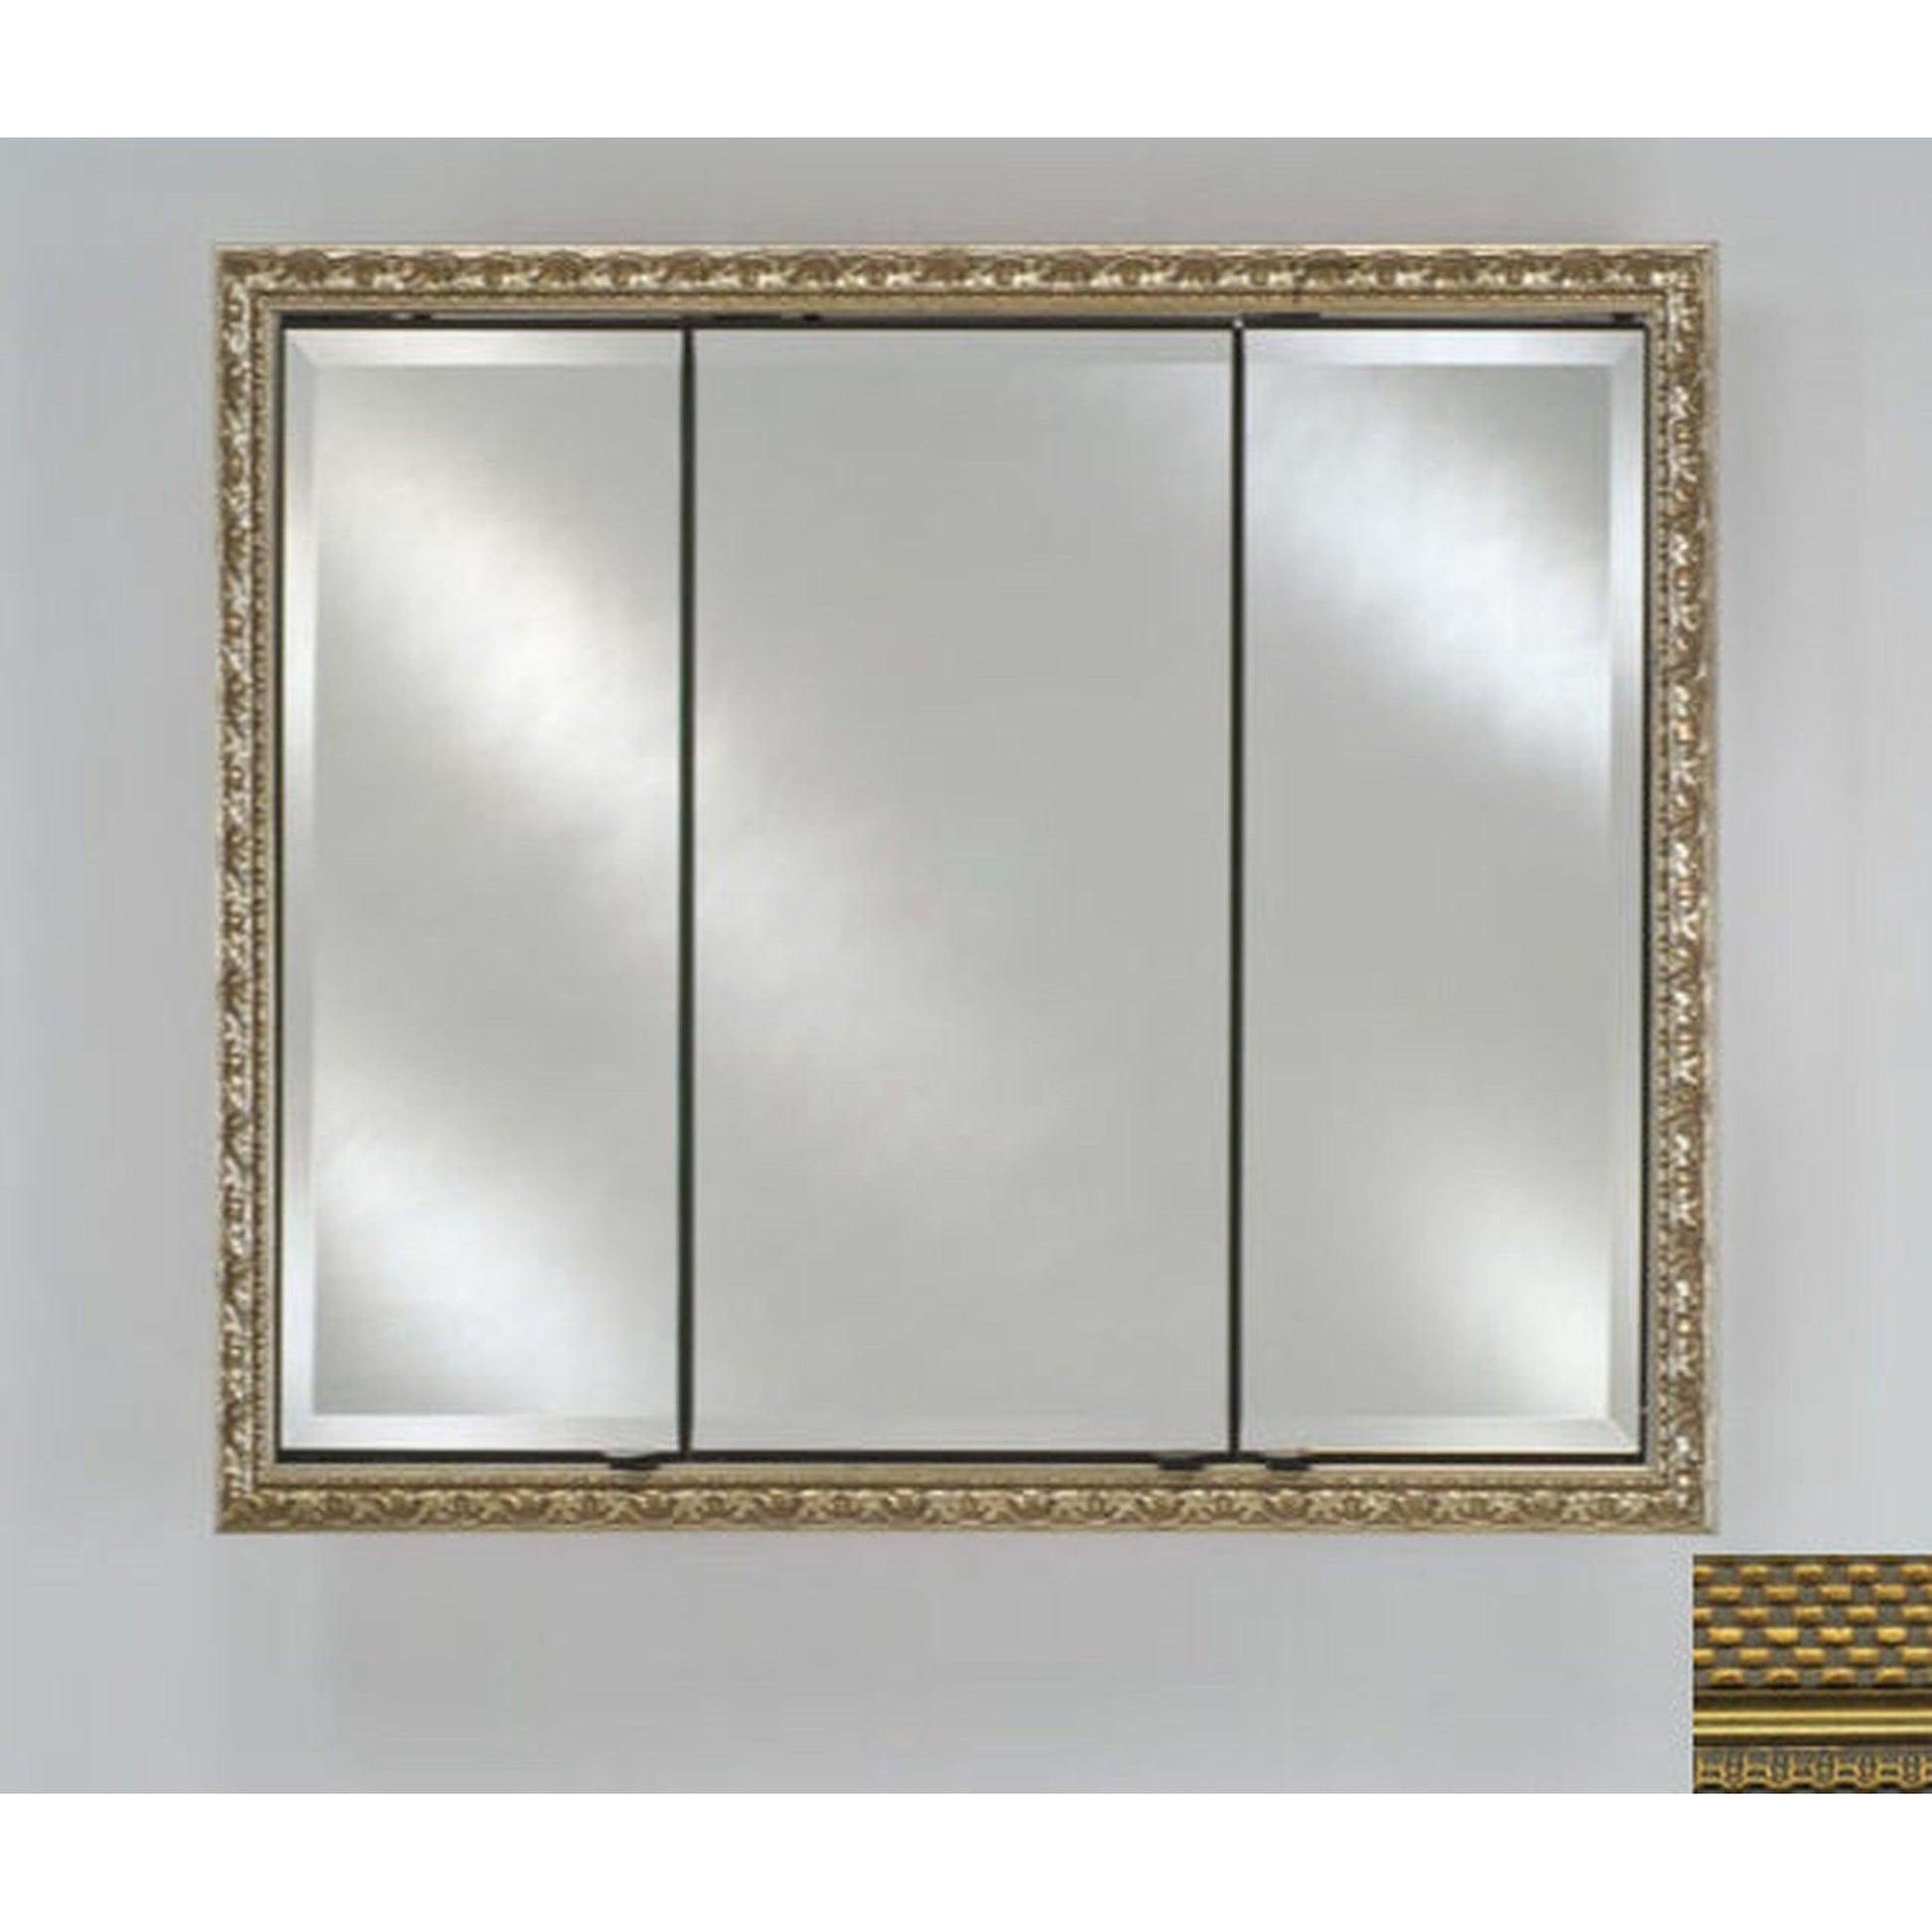 Afina Signature 34" x 30" Elegance Antique Gold Recessed Triple Door Medicine Cabinet With Beveled Edge Mirror